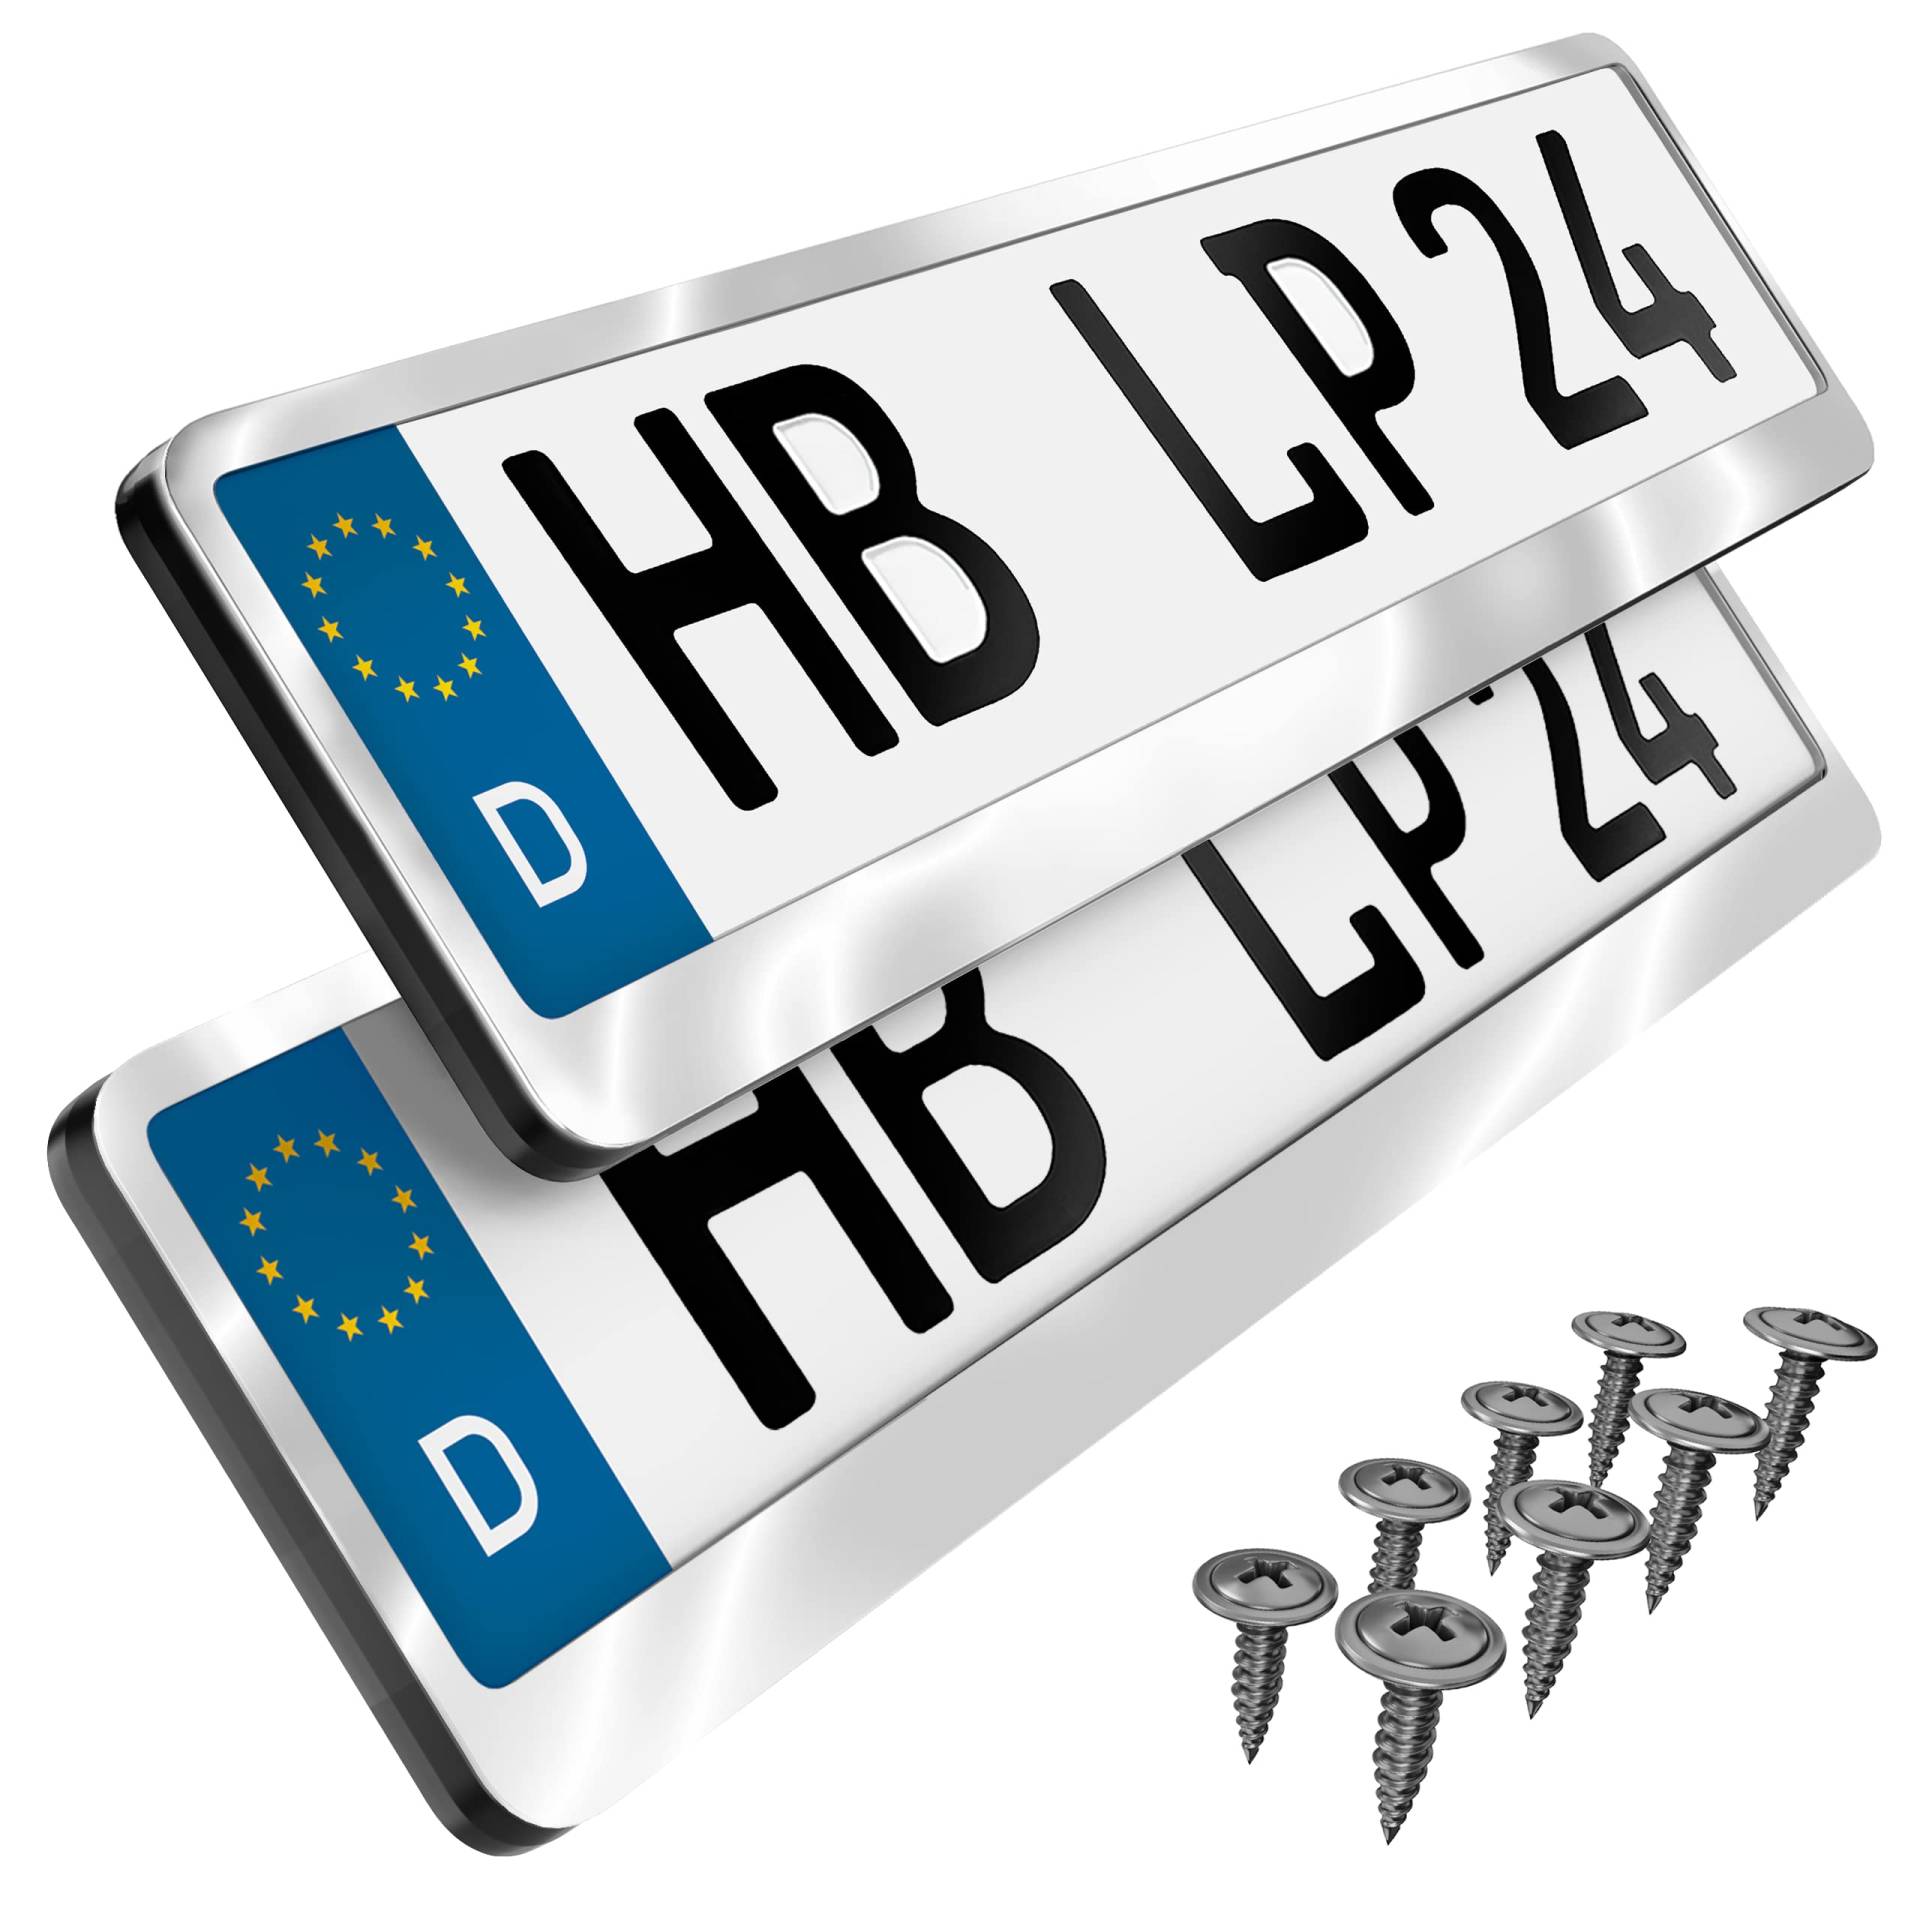 Premium Auto Kennzeichenhalter Nummernschildhalter Edelstahl poliert Kennzeichenverstärker Kennzeichenhalterung Nummernschildhalterung Halter Kennzeichen Nummernschild (Edelstahl poliert) von L & P Car Design